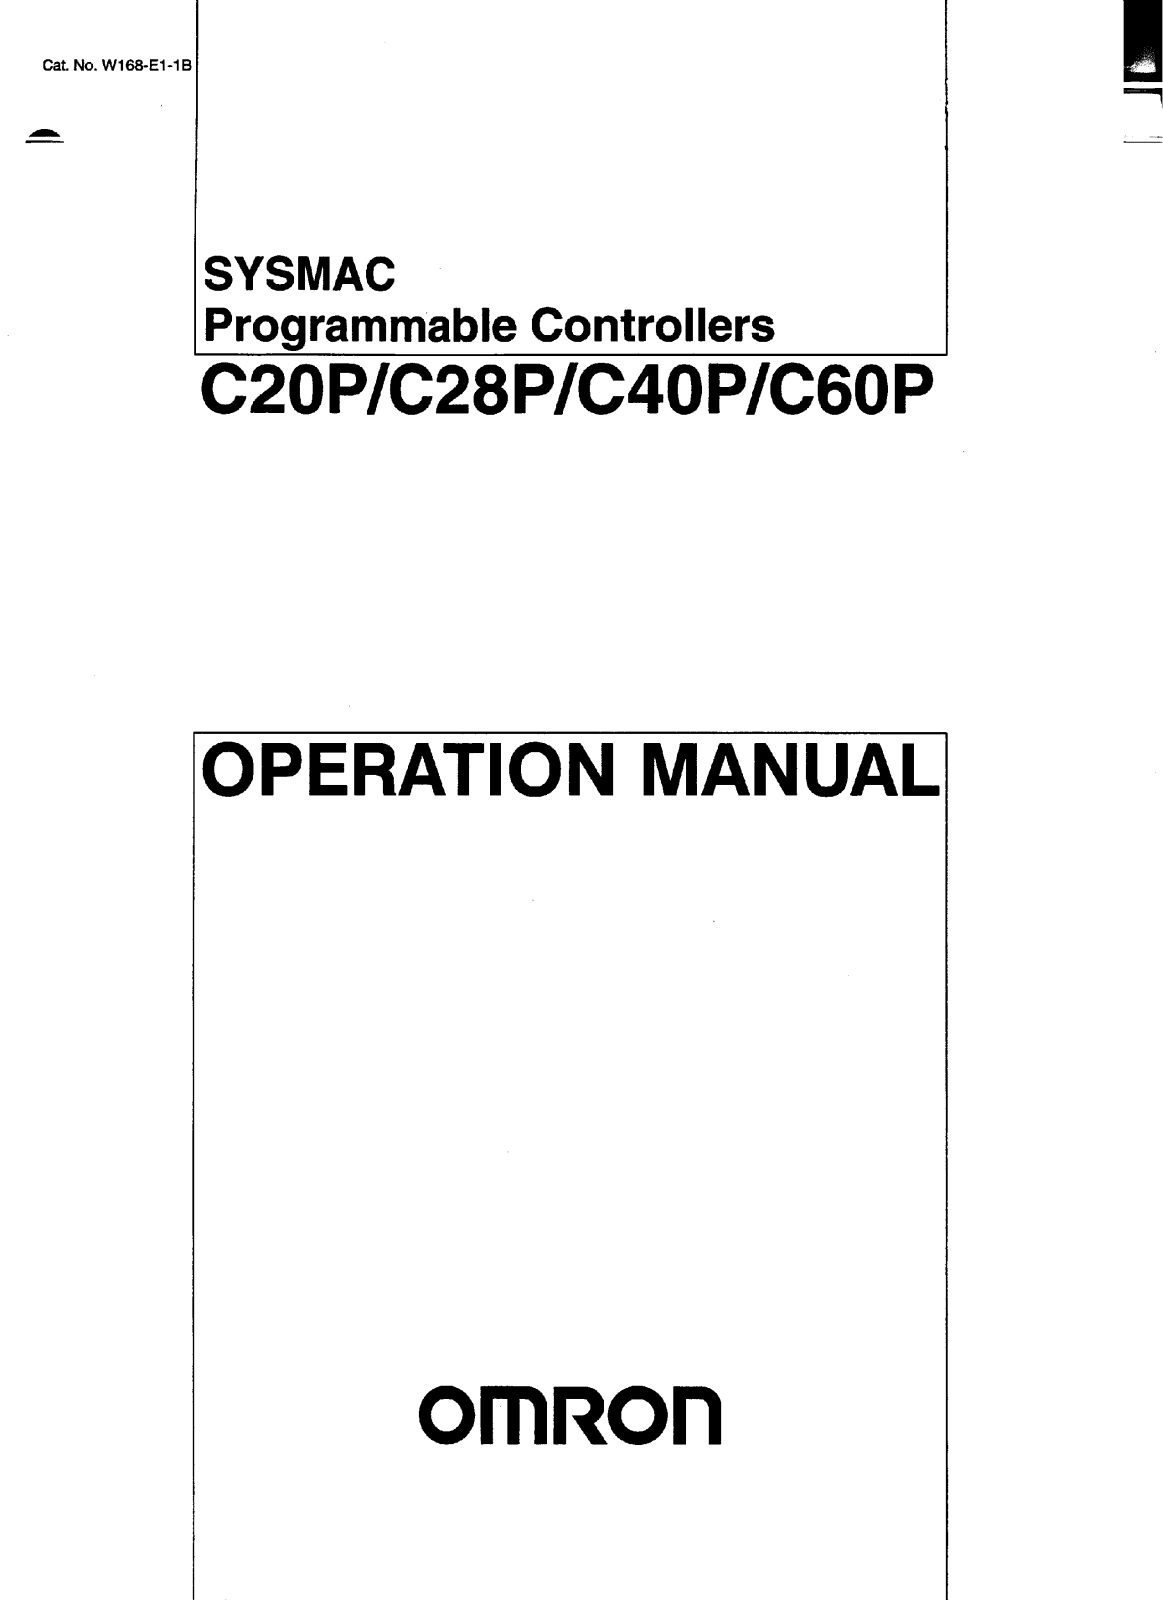 OMRON C20P, C28P, C40P, C60P User Manual